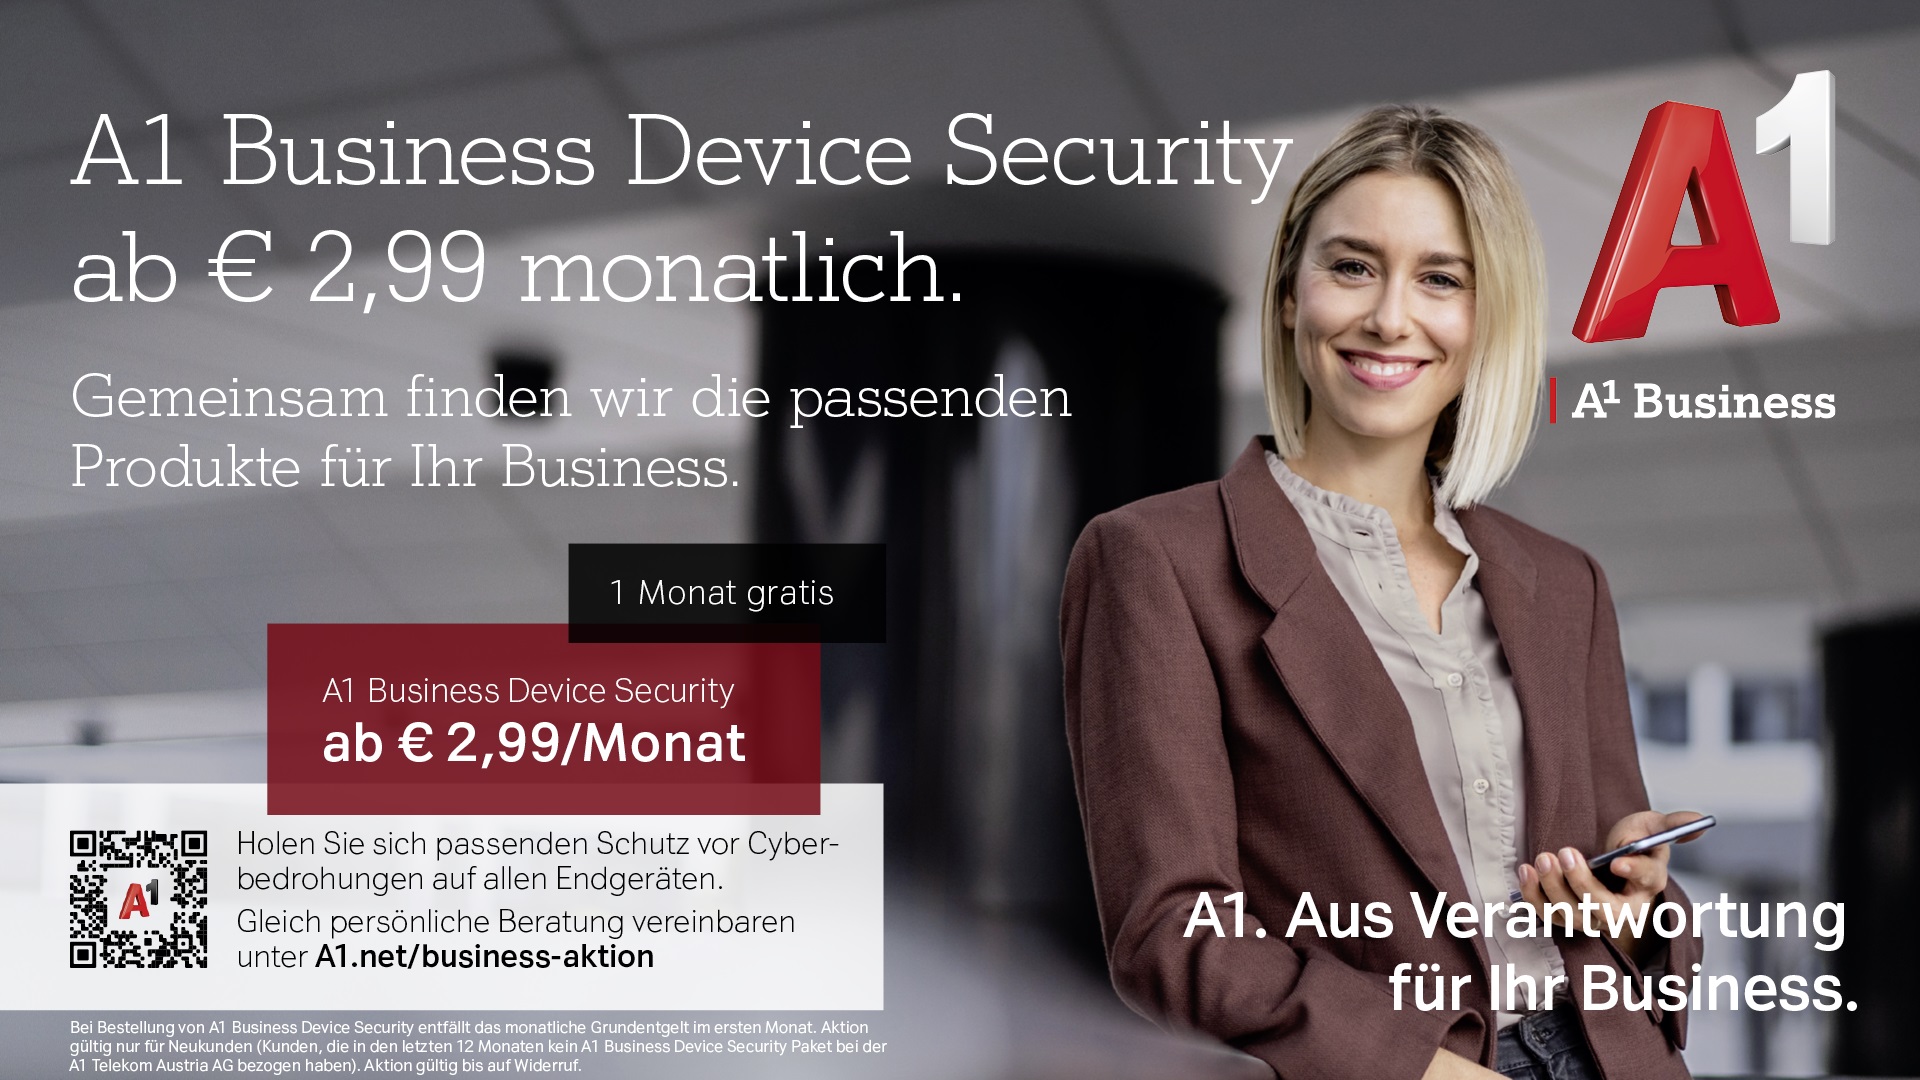 A1 Business Device Security ab € 2,99 monatlich. Gemeinsam finden wir die passenden Produkte für Ihr Business